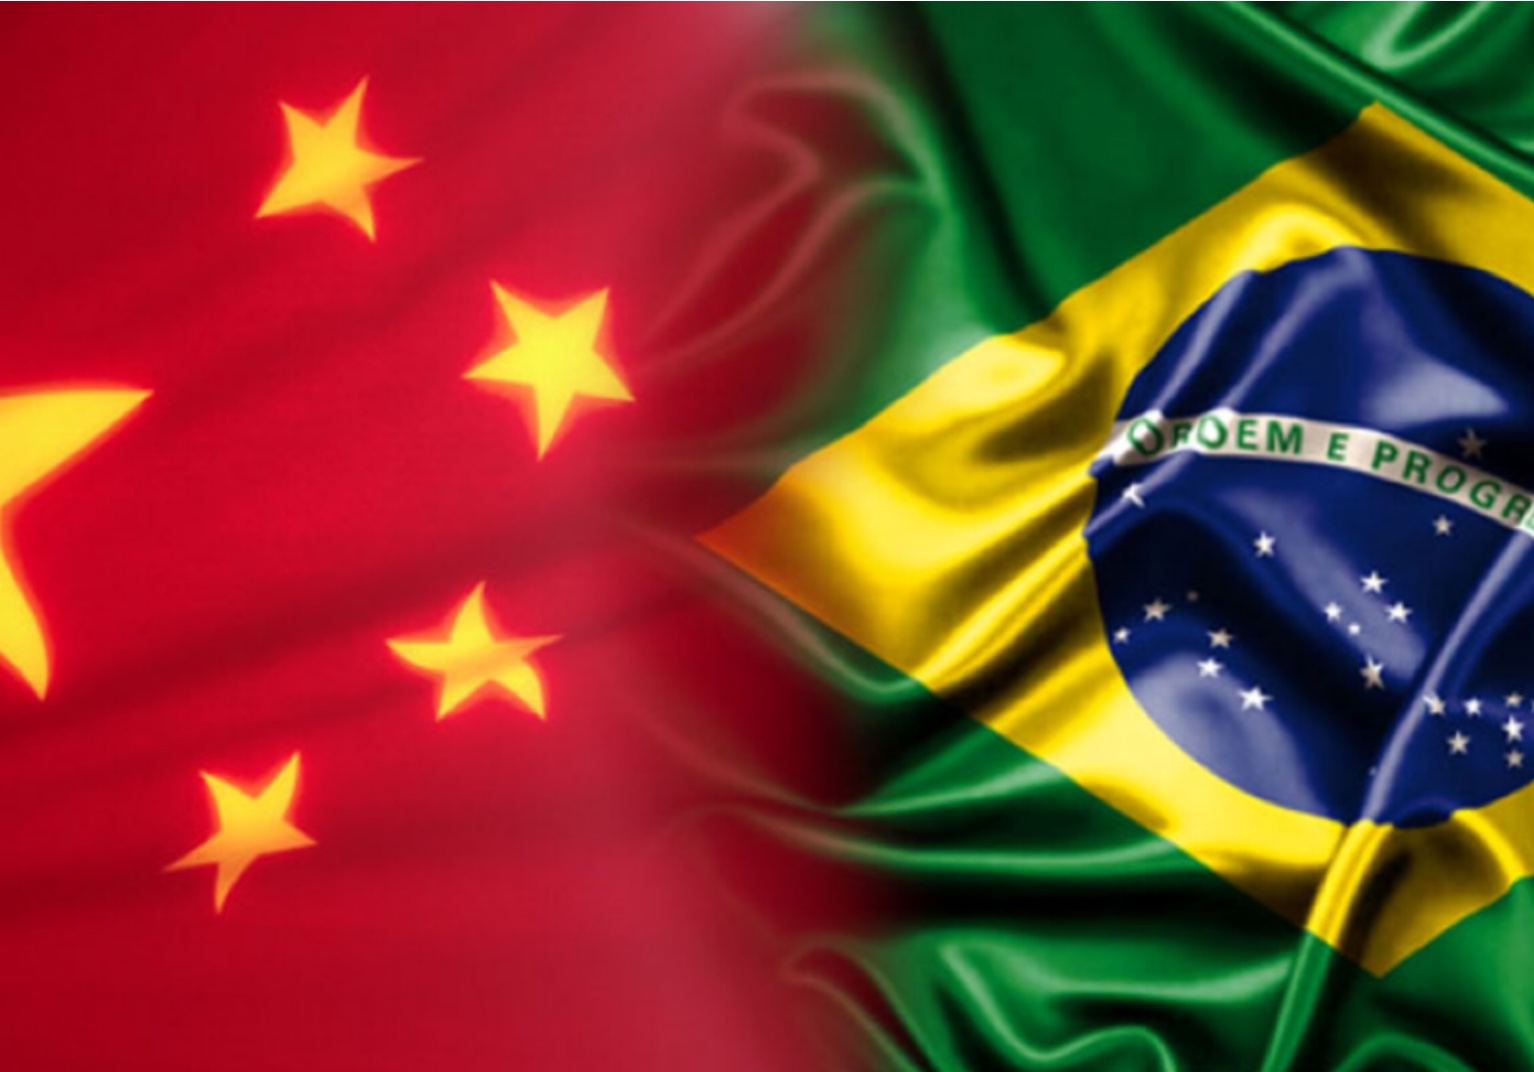 China e Brasil debatem papel do setor financeiro para agricultura sustentável